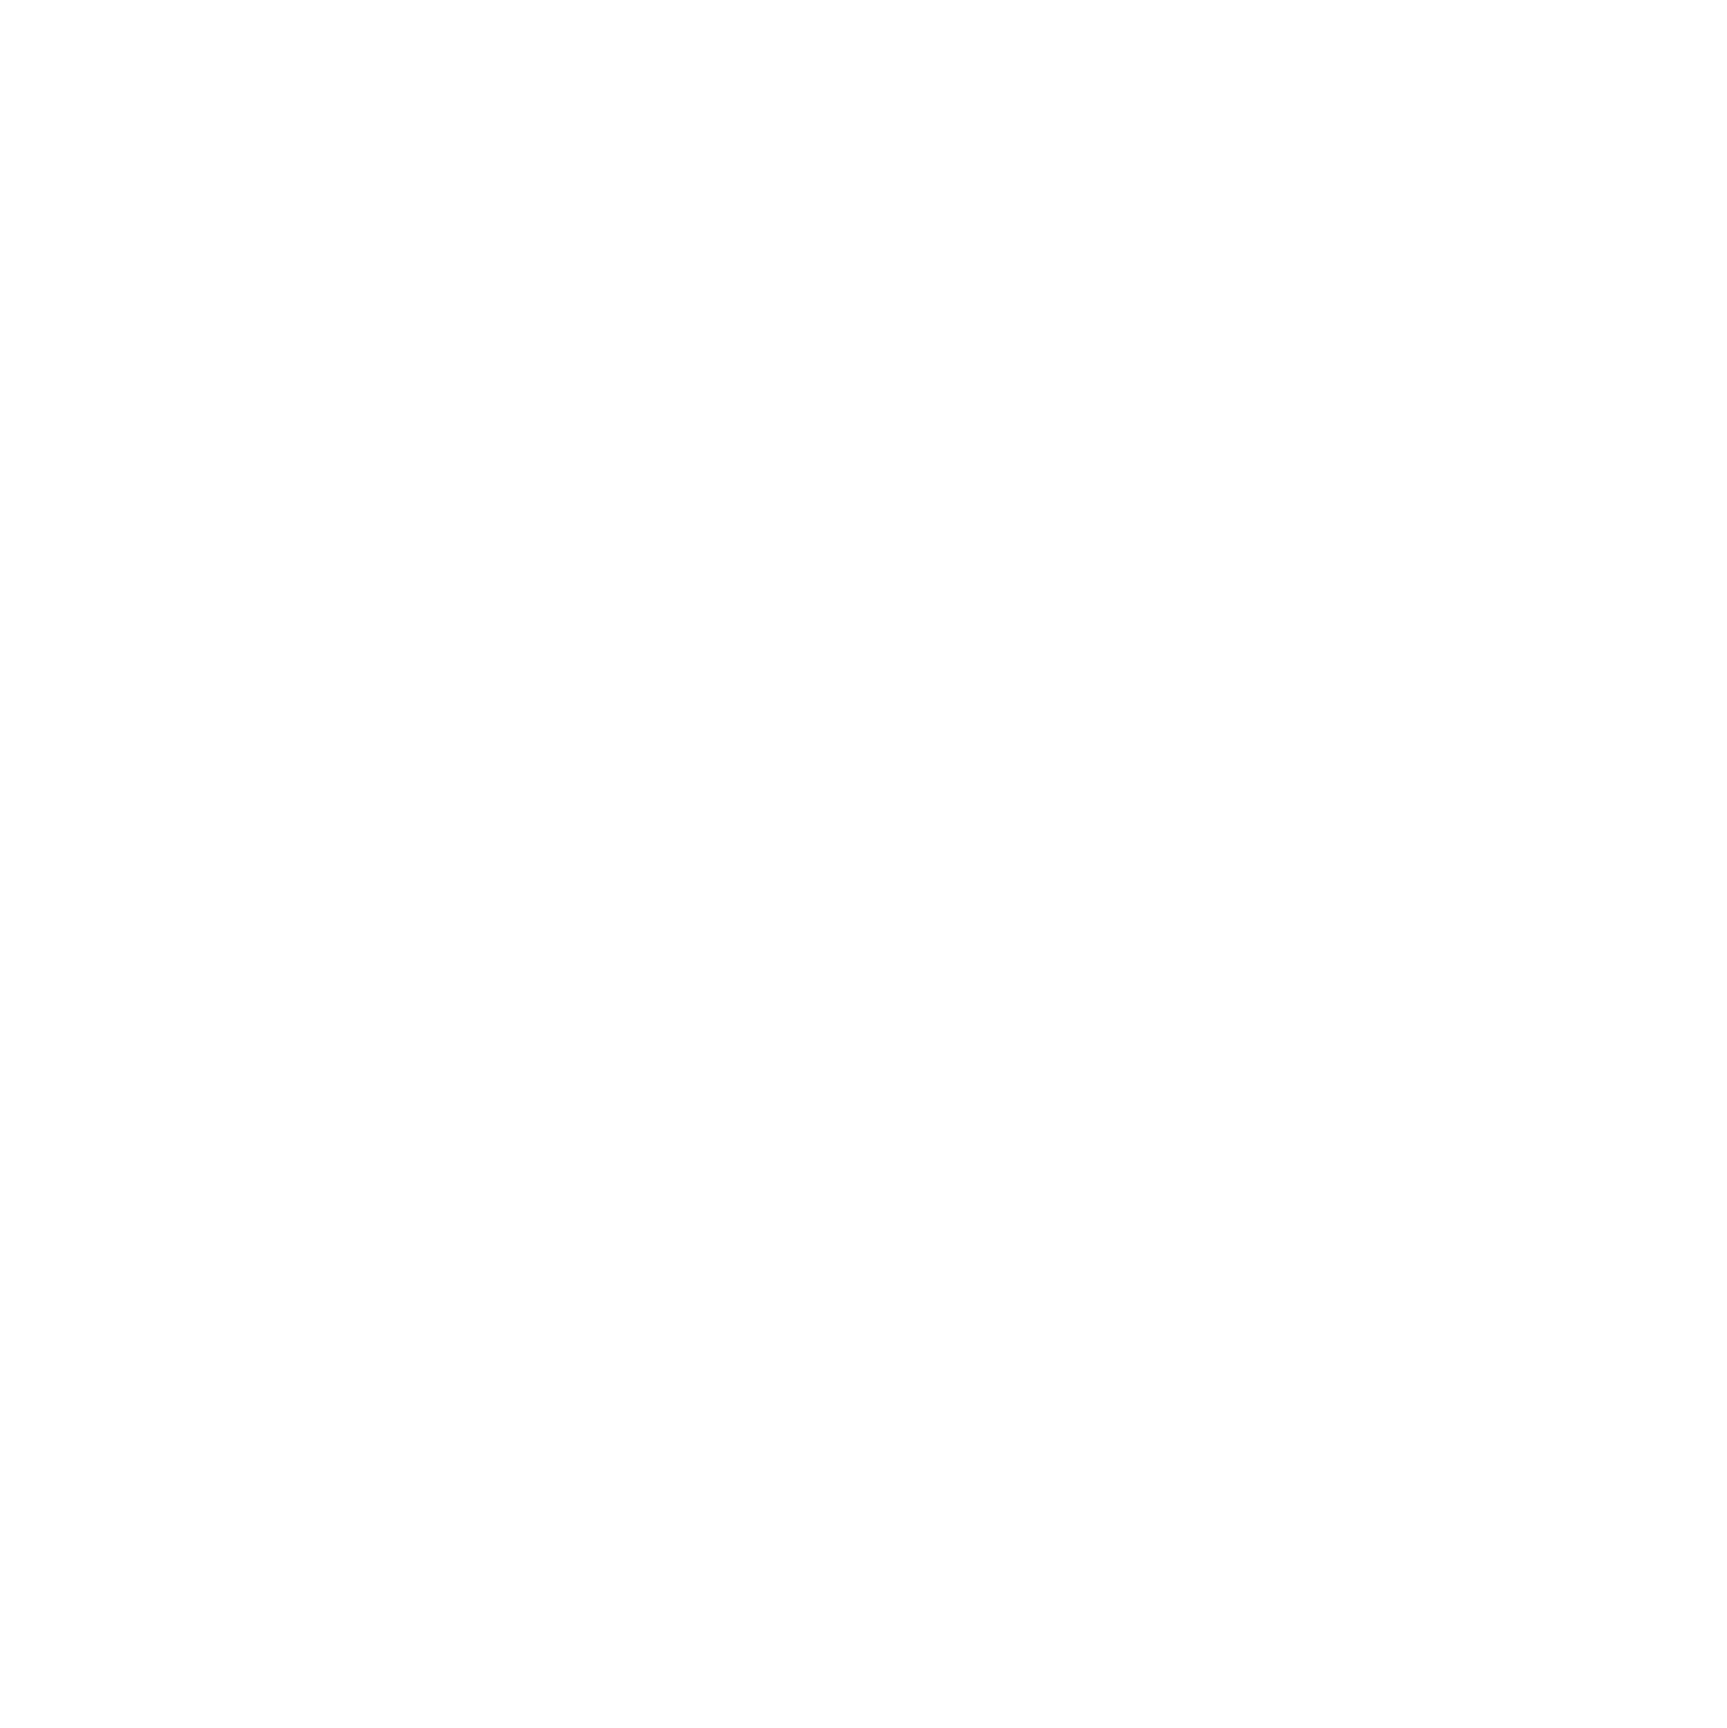 Seleccionados del Campo Logo